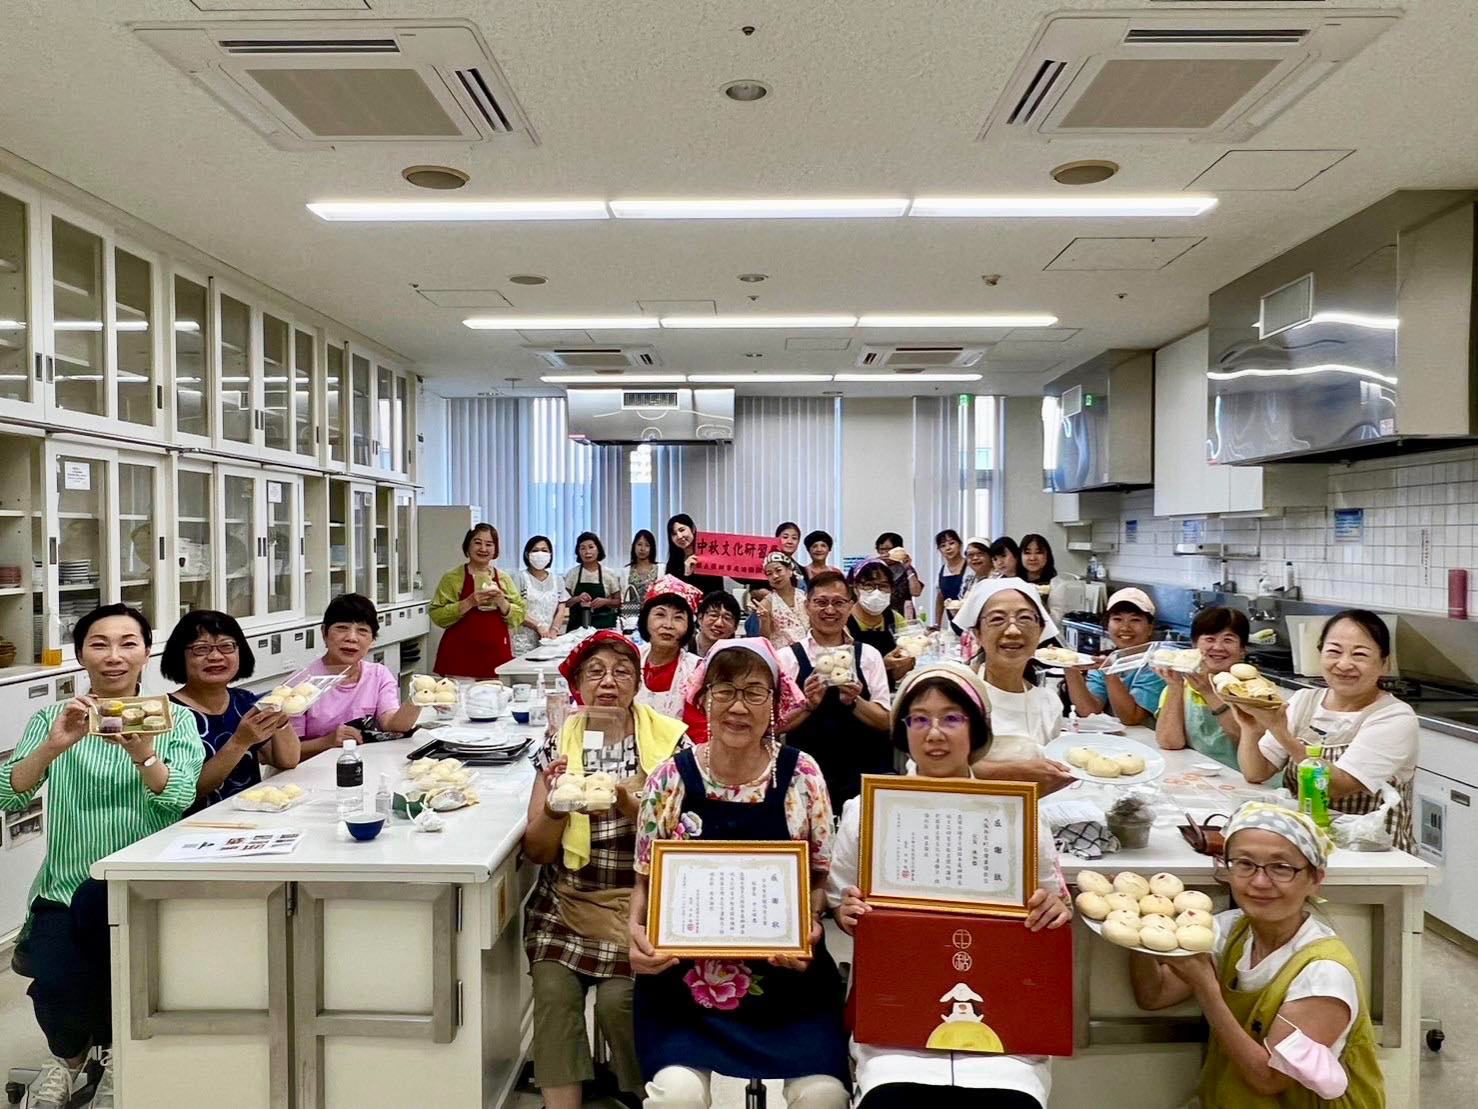 動手做月餅體驗臺灣中秋文化圖片